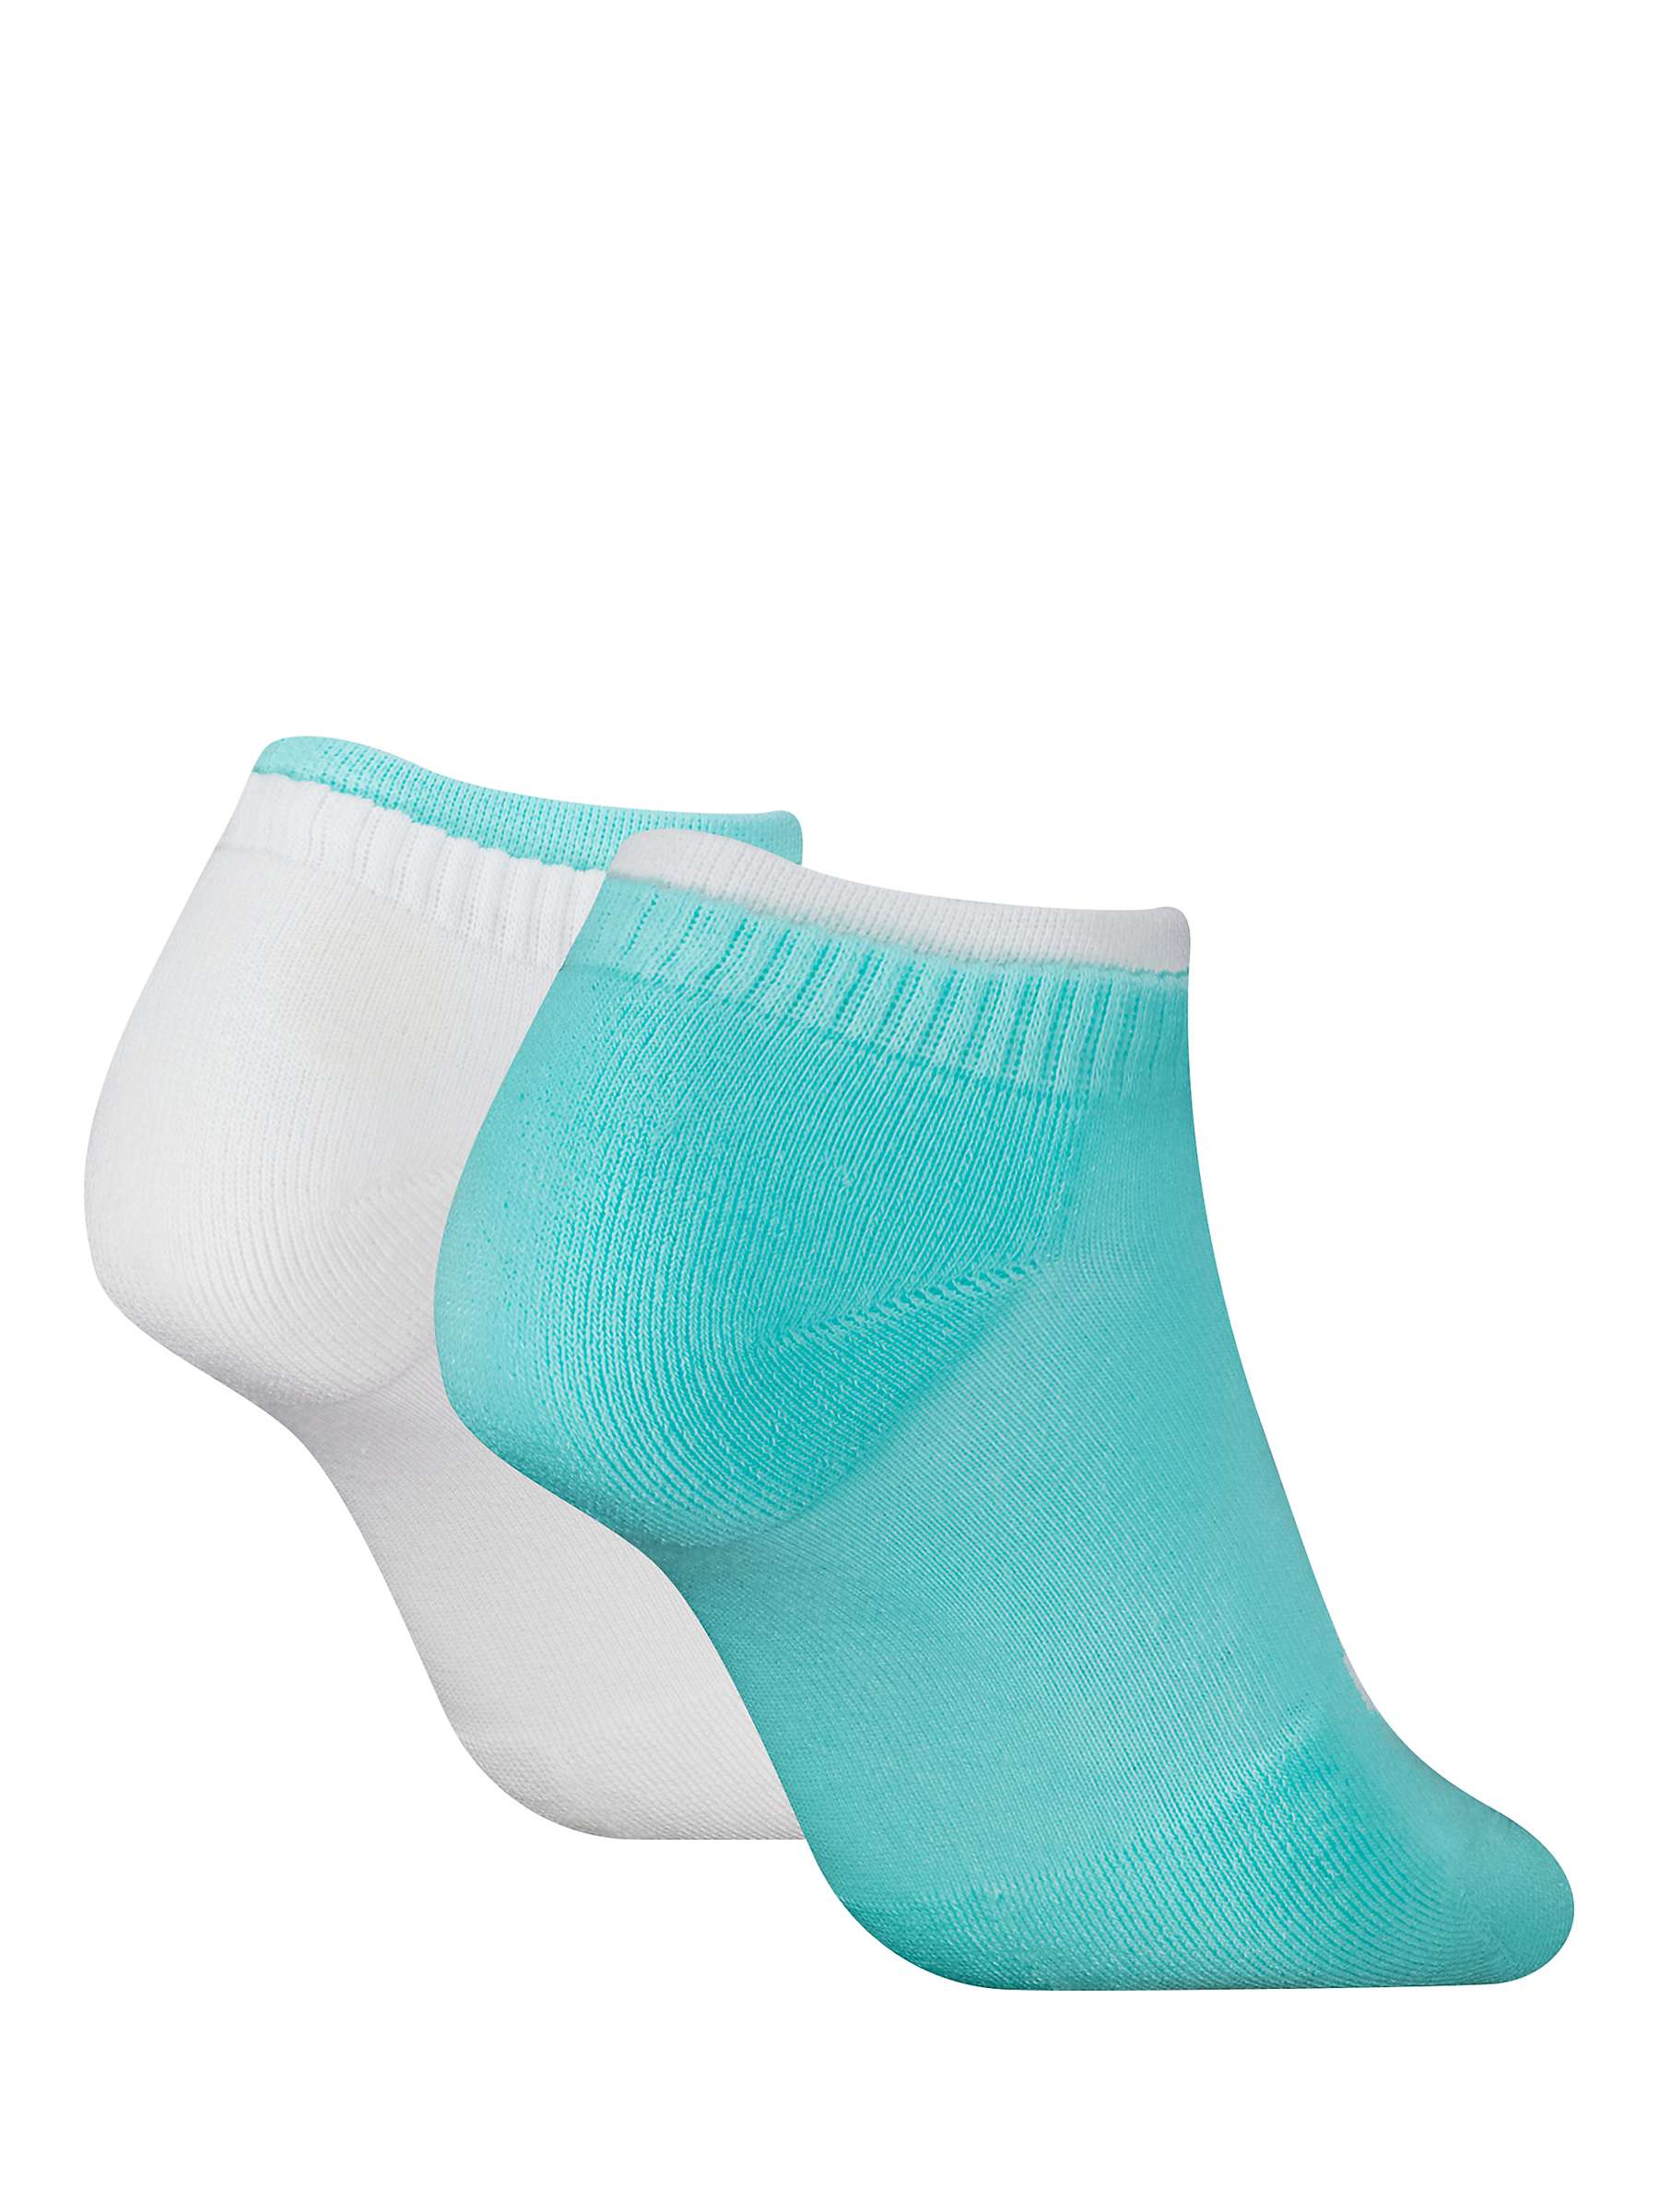 Buy Calvin Klein Logo Trainer Socks, Pack of 2, Light Turquoise/White Online at johnlewis.com